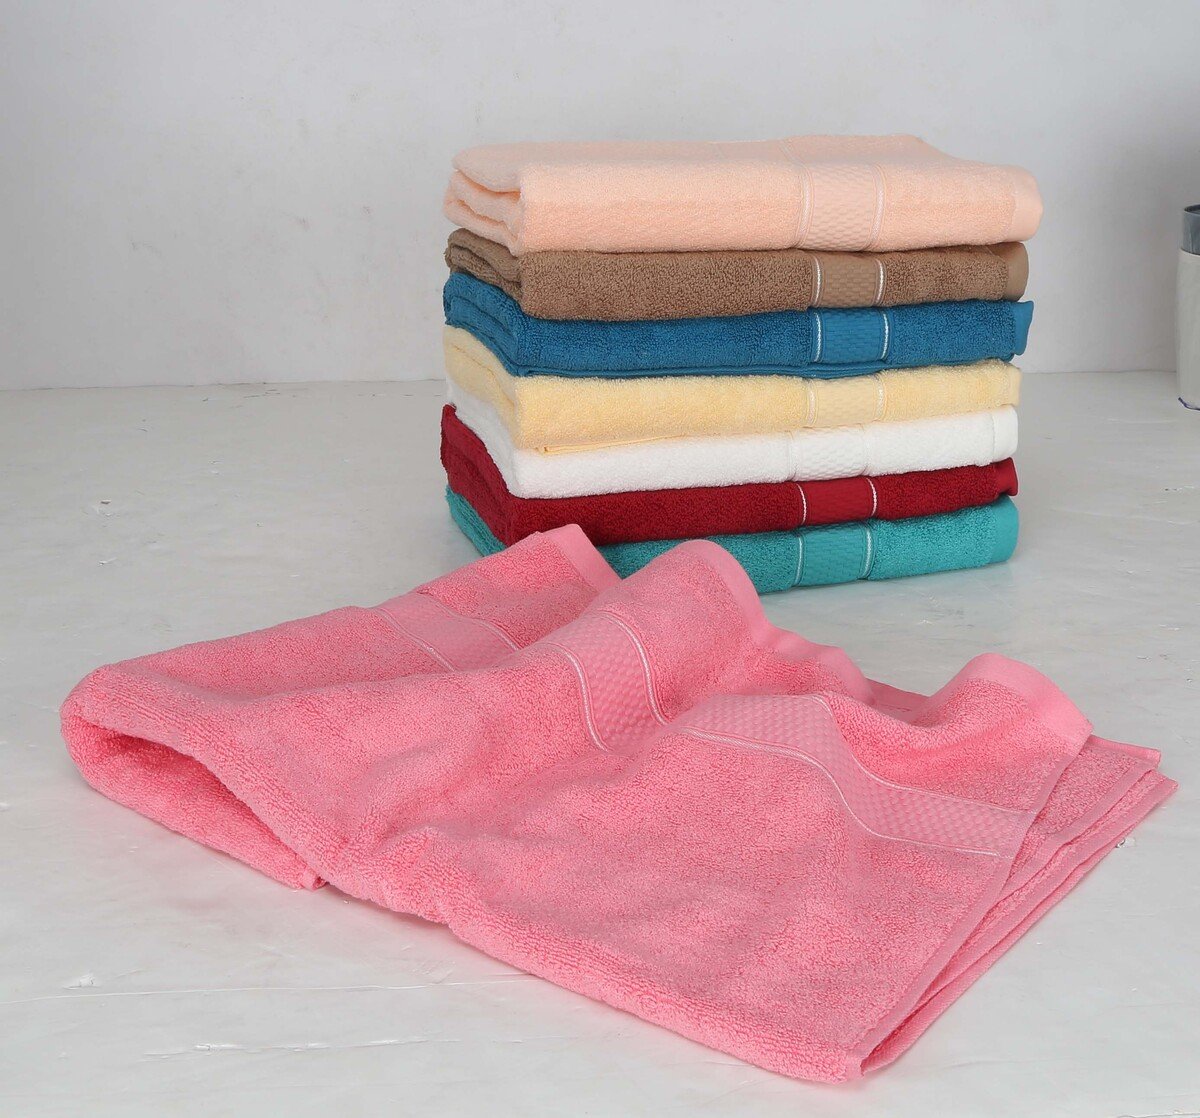 Maple Leaf Home Bath Towel Cotton 1pc Assorted Colors Size: W70 x L140cm